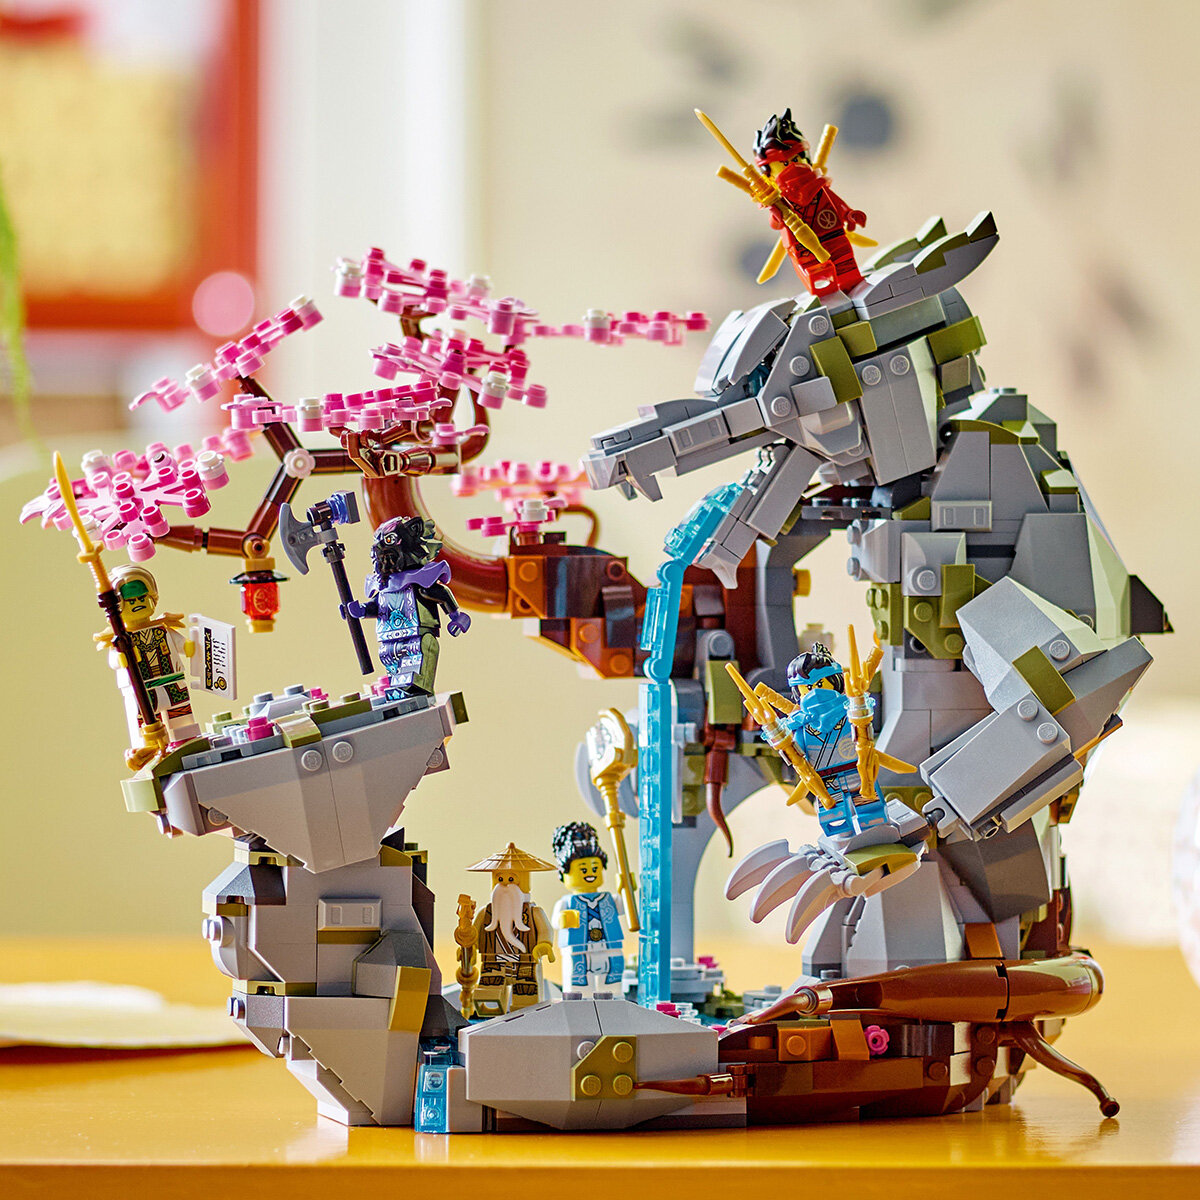 Buy LEGO Ninjango Item Image at Costco.co.uk